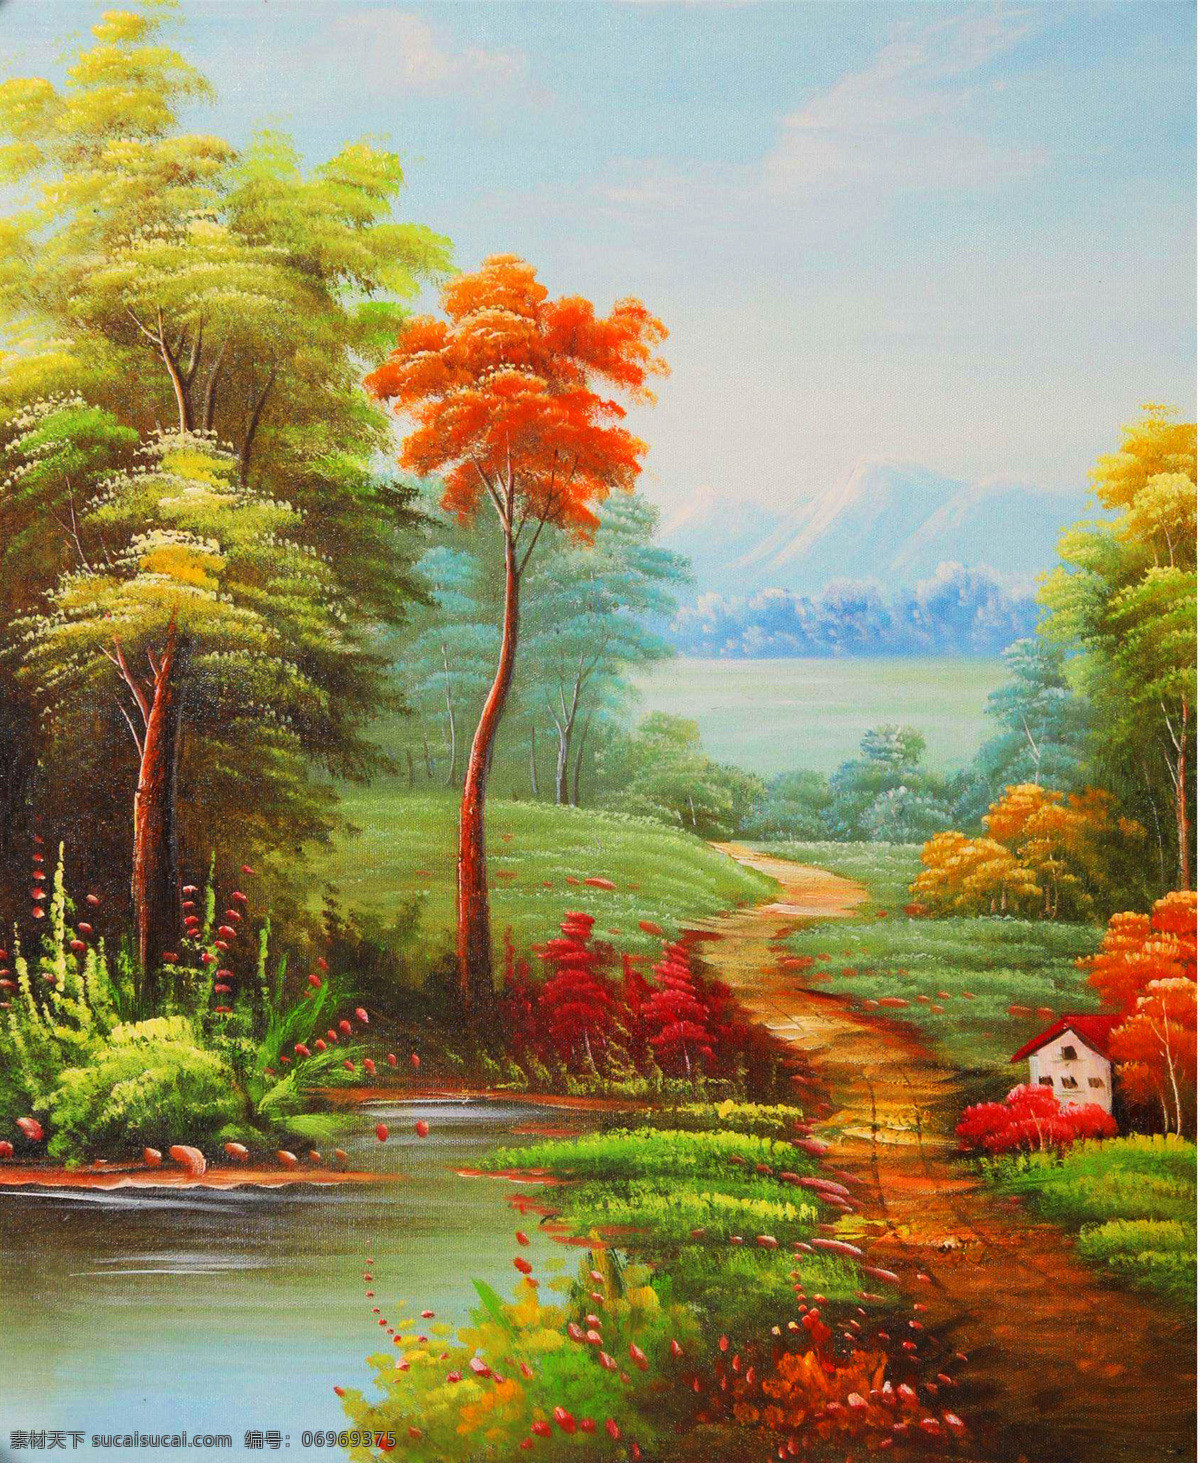 油画 风景画 风景油画 自然风景油画 西方油画 油画风景 油画作品 美丽油画 艺术绘画 文化艺术 绘画书法